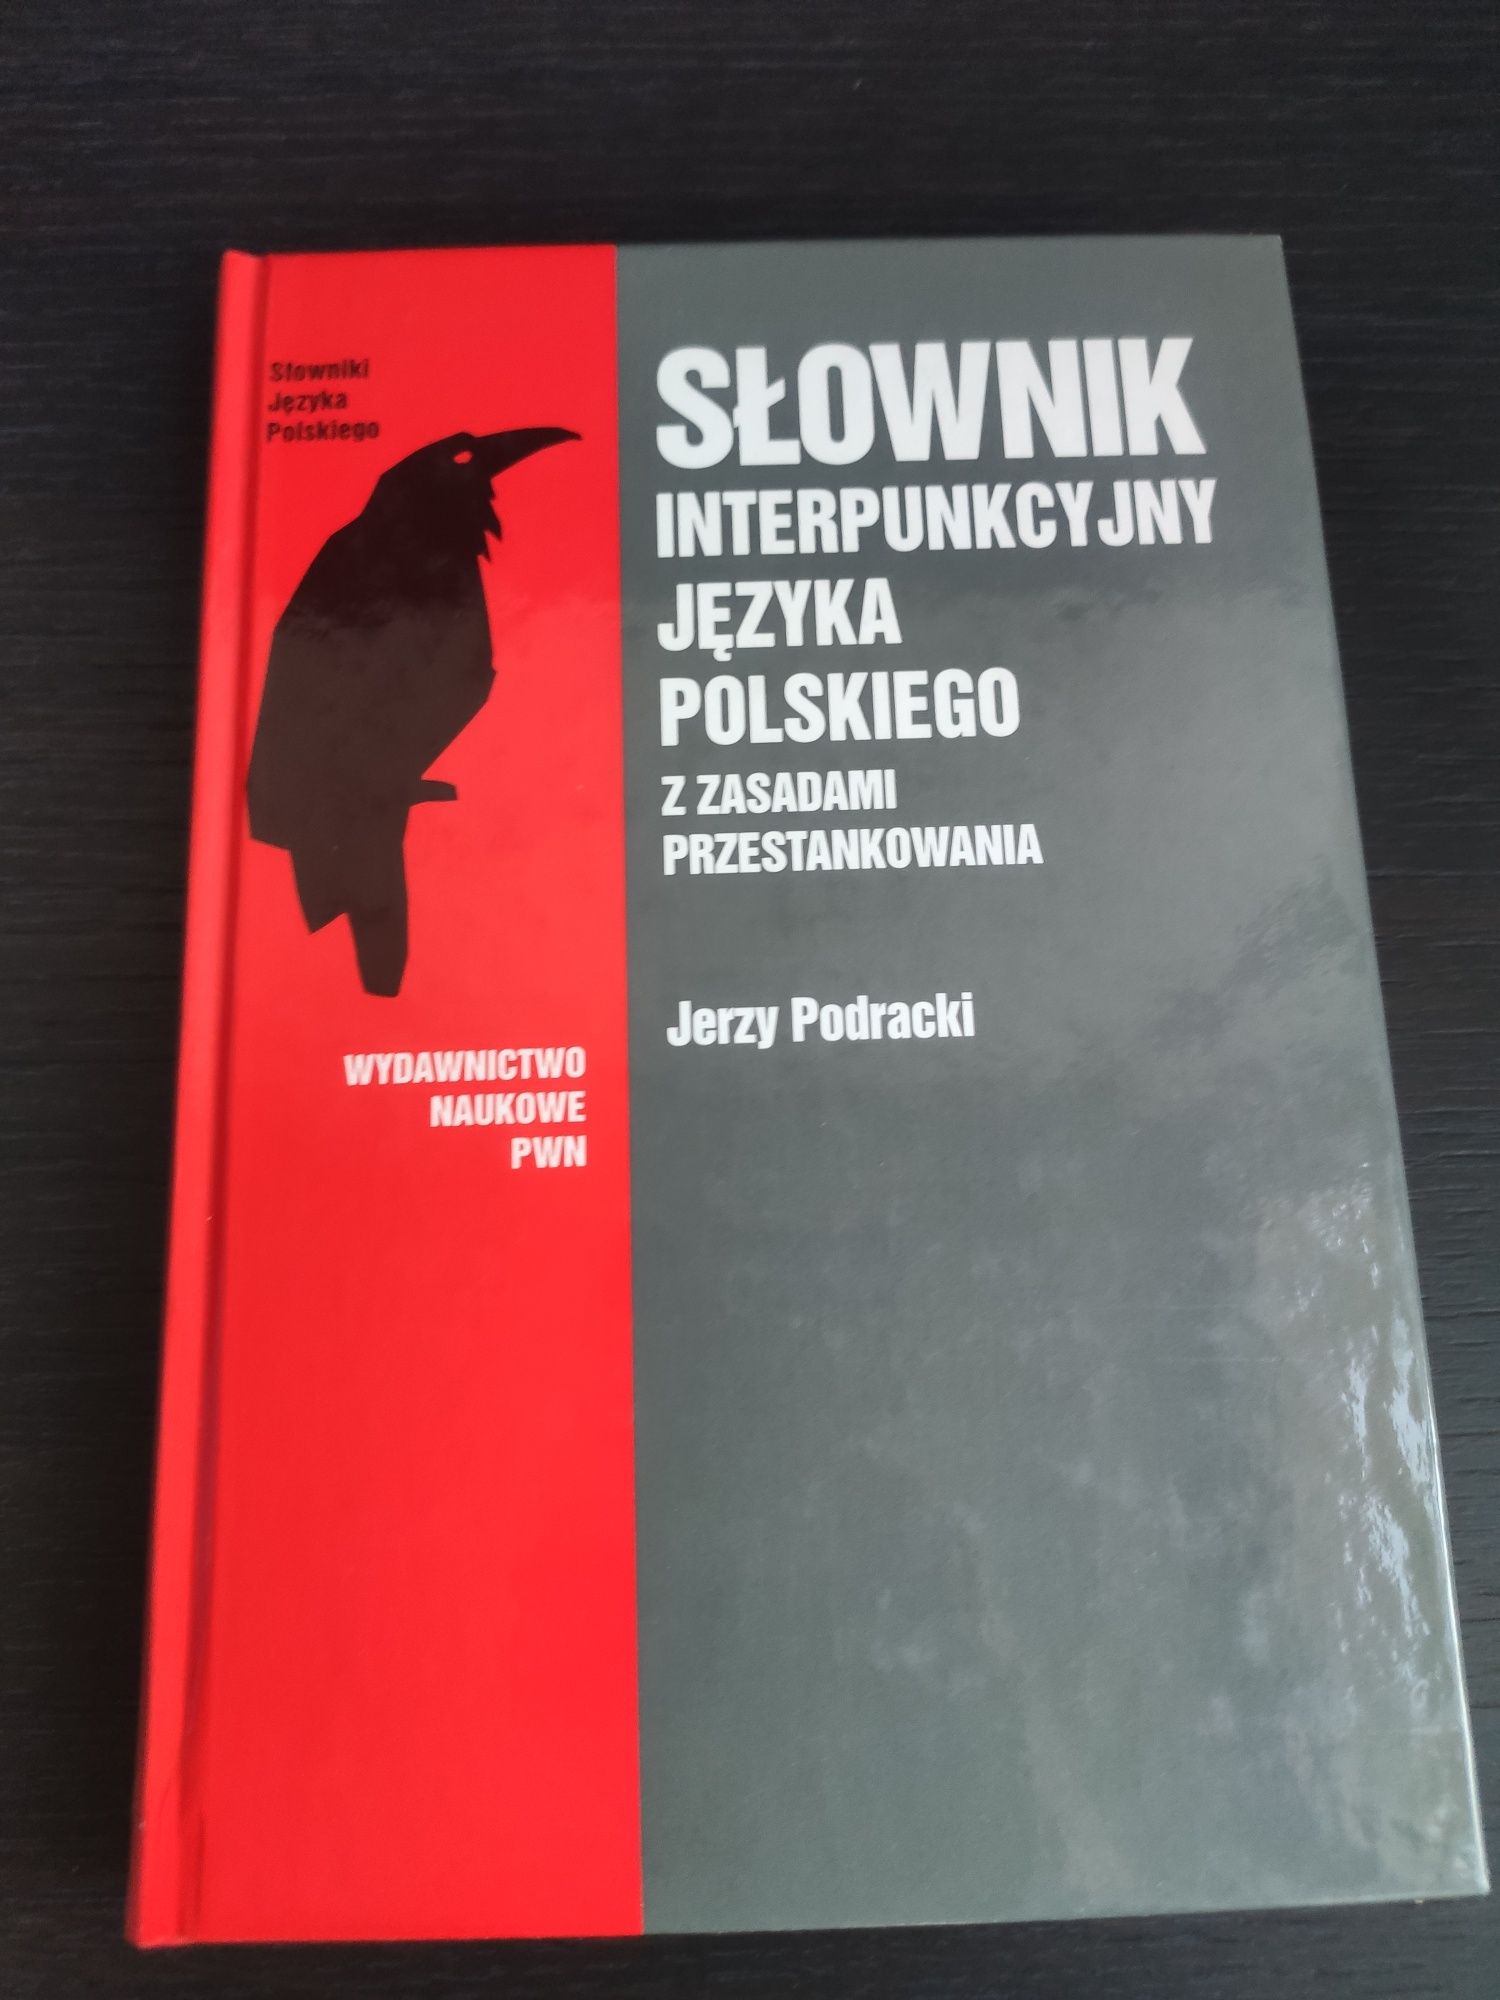 Słownik interpunkcyjny języka polskiego. PWN Jerzy Podracki